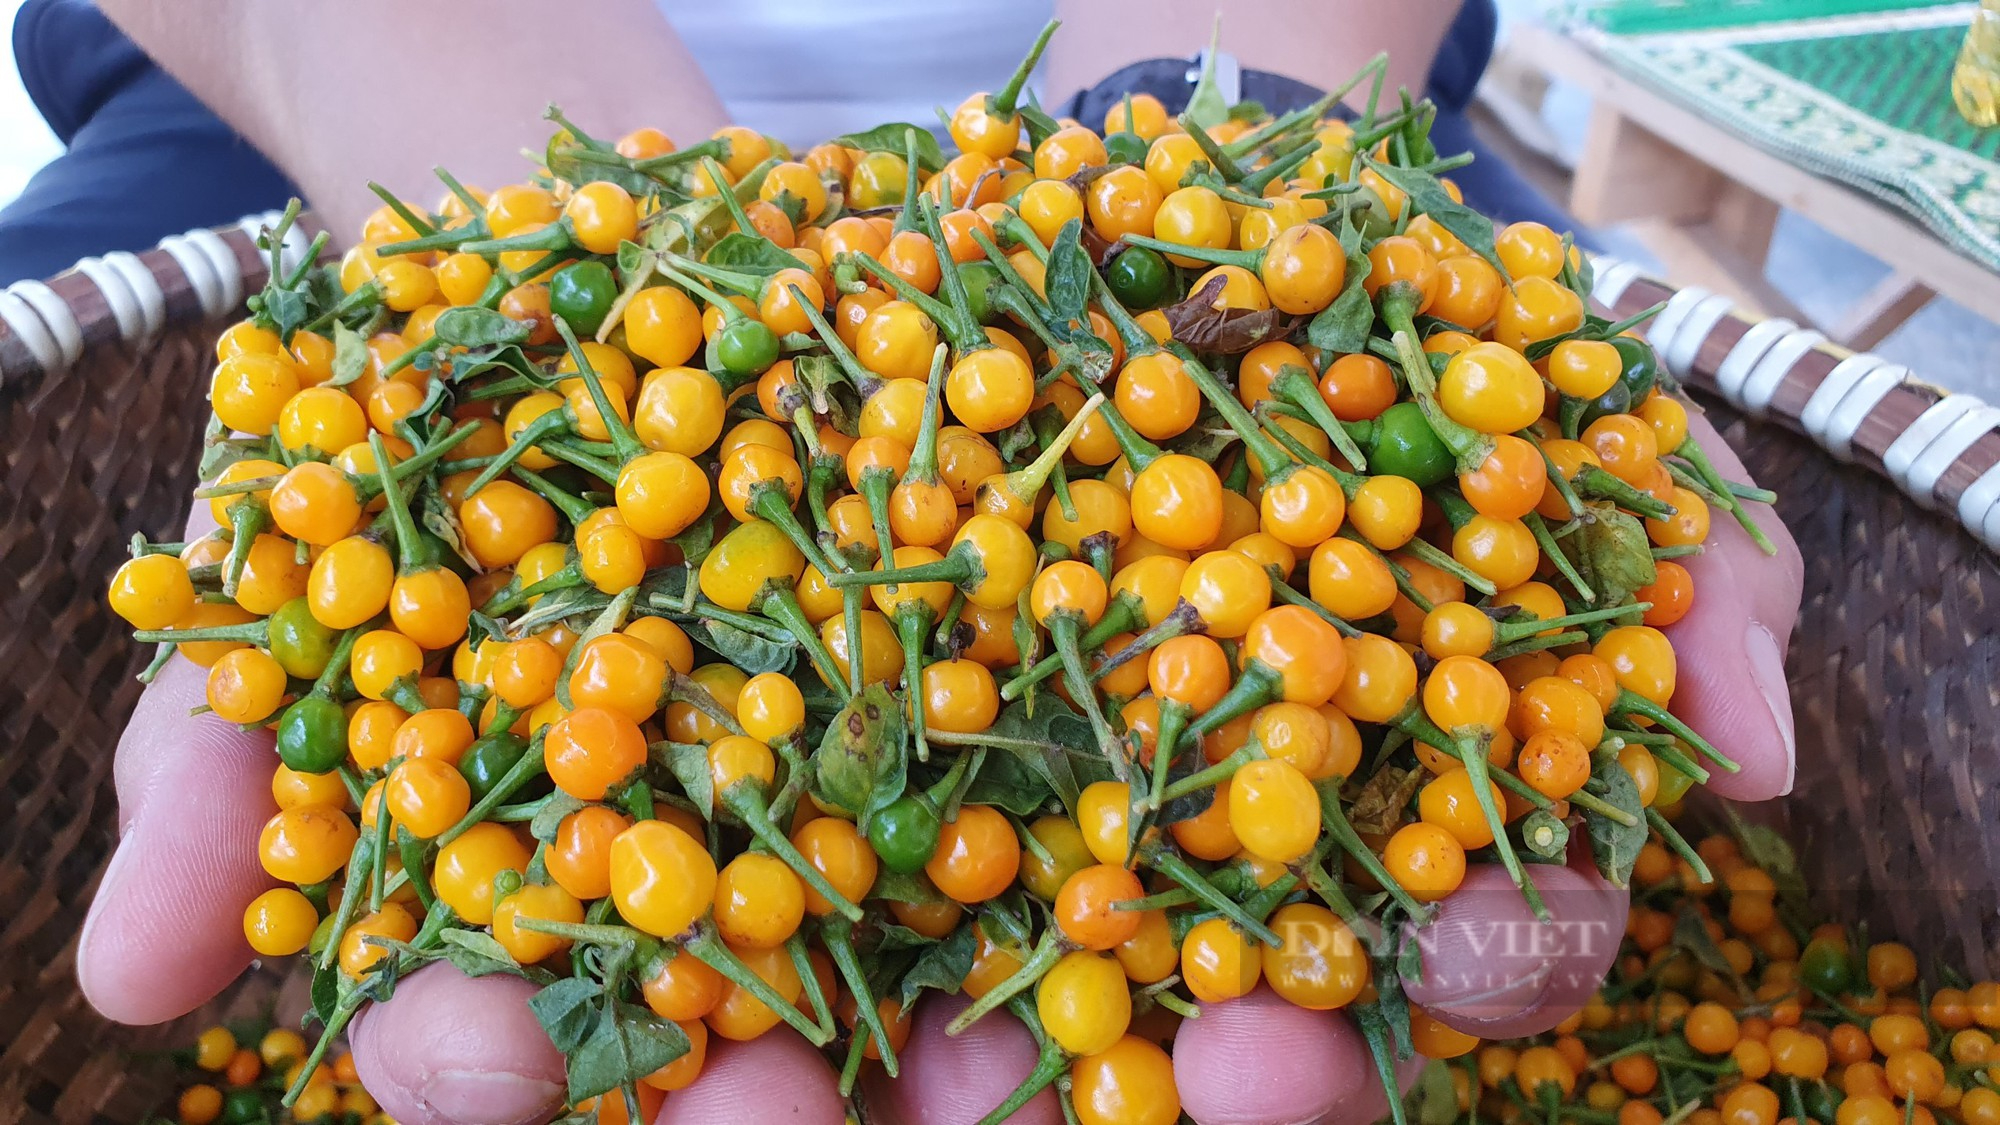 Nông dân Hà Tĩnh trồng giống ớt quả bé tí tẹo, giá bán lại đắt nhất thế giới, mỗi năm lãi hàng trăm triệu - Ảnh 8.